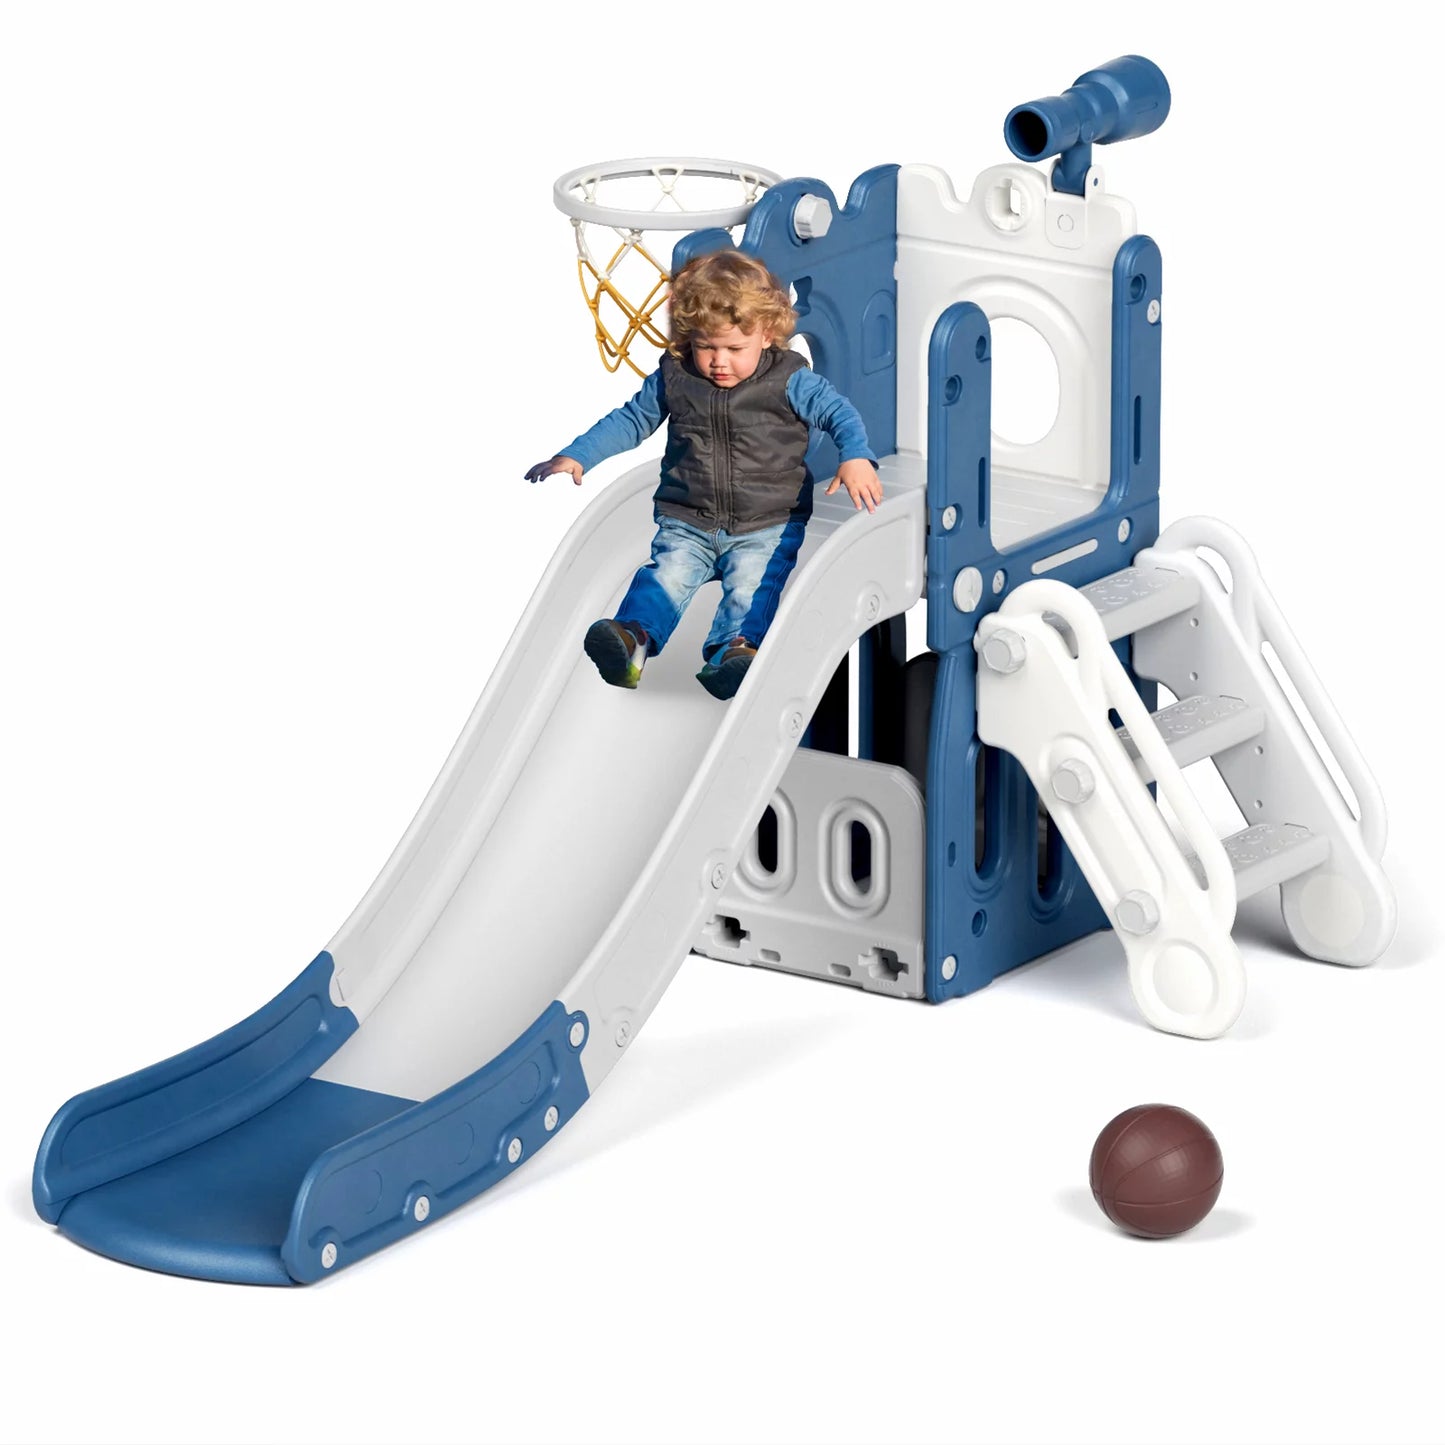 Toddler Slide Set, Kids Slide with Basketball Hoop, Baby Climber Playset Outdoor Indoor Slide Toys Age 1-4